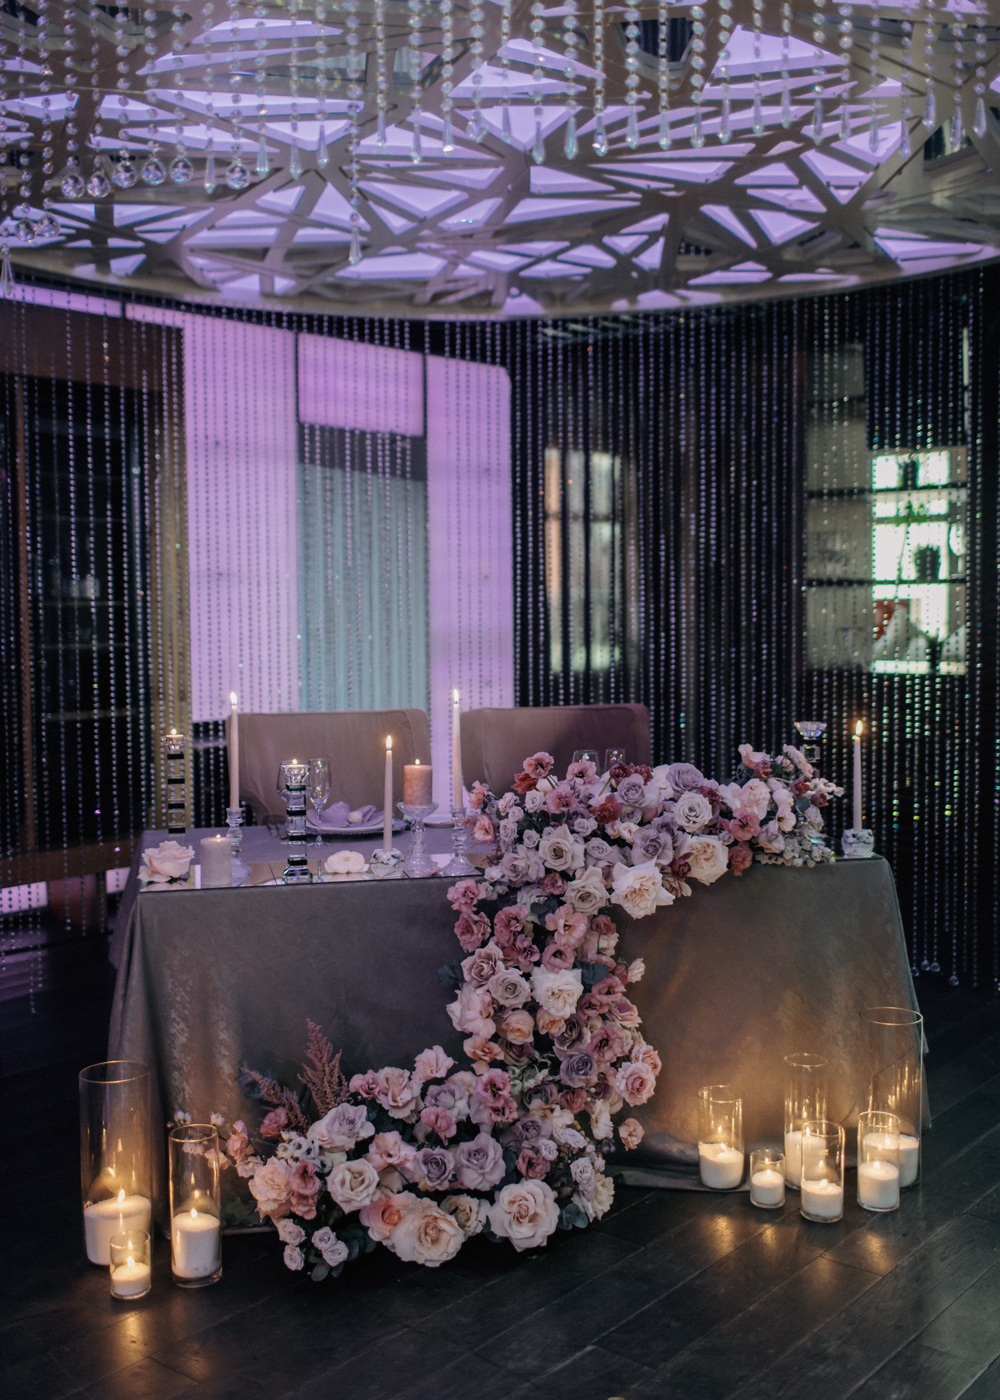 ФОТО ИЗ СТАТЬИ: Элегантная свадьба в серебристо-лиловой палитре